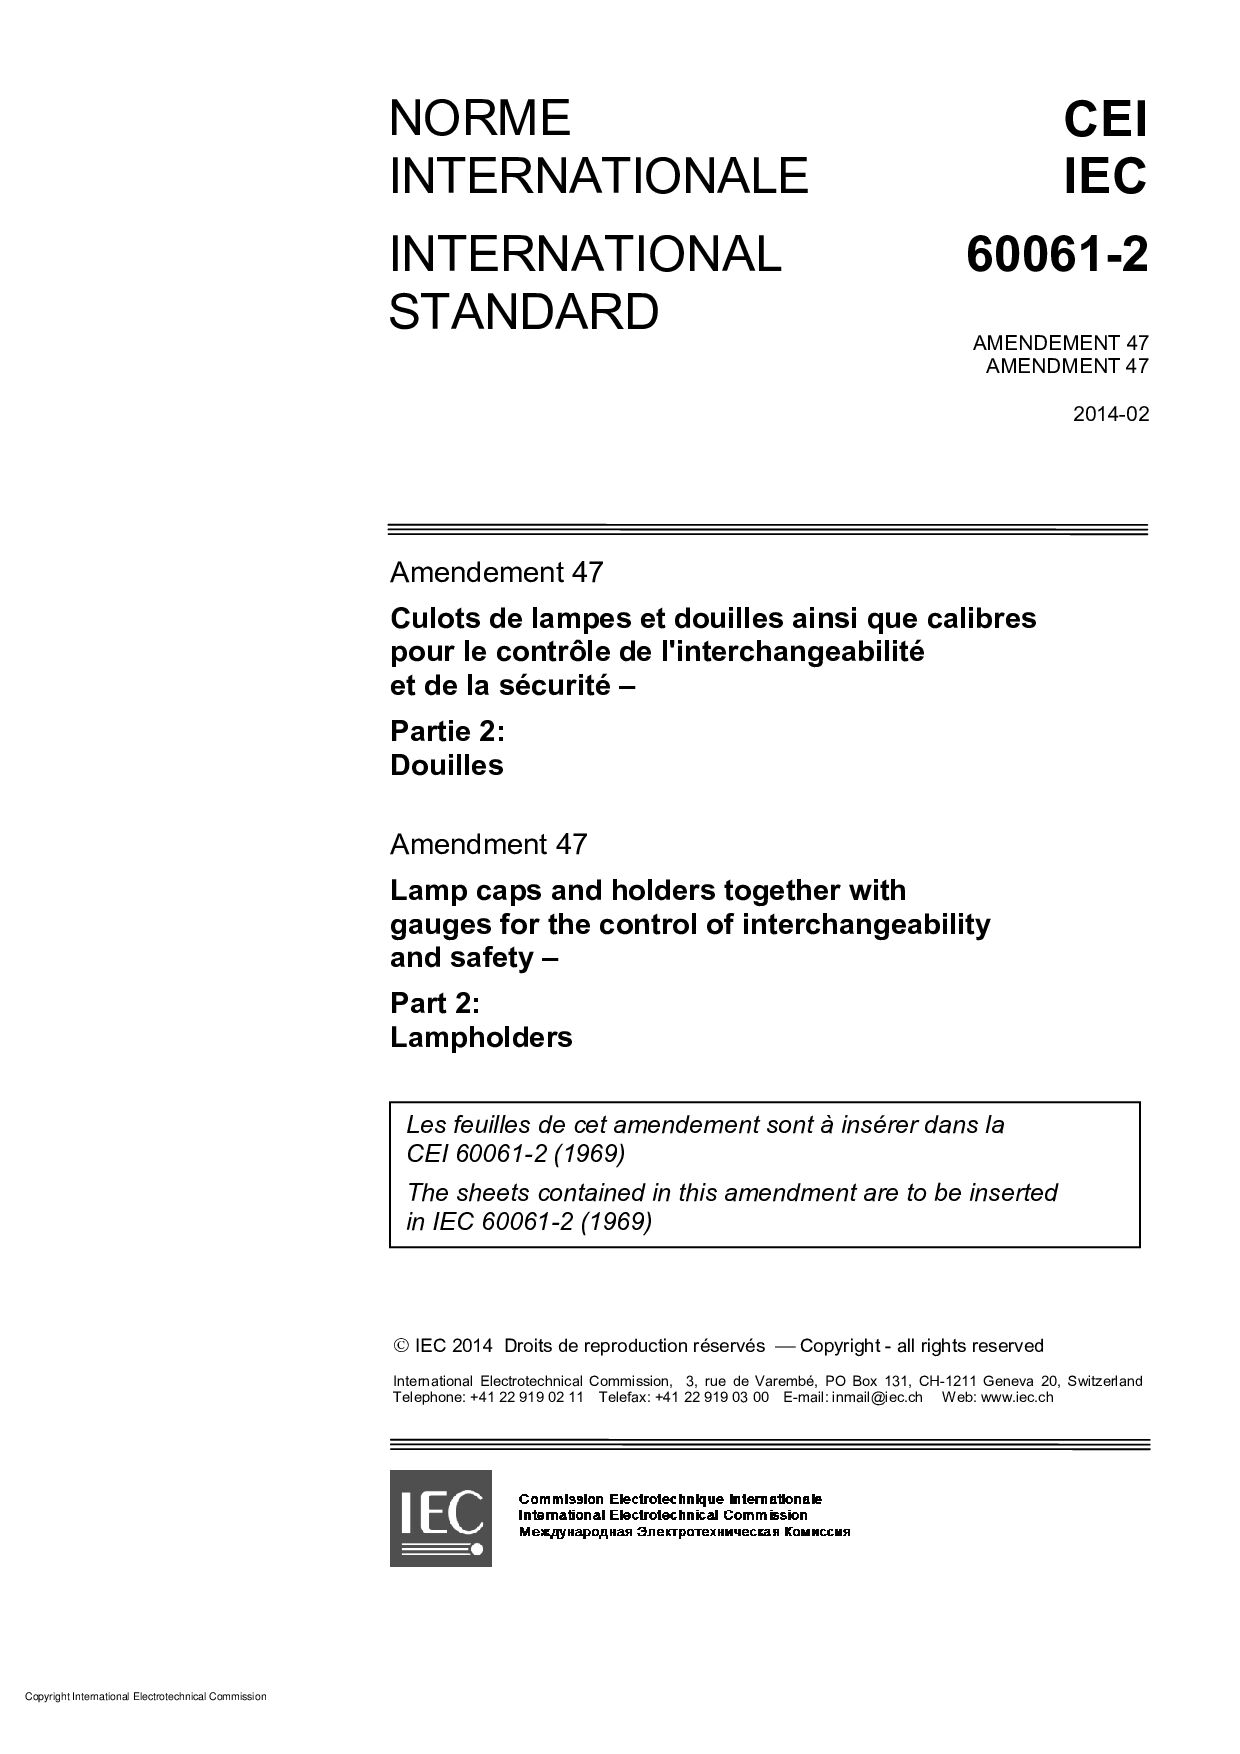 IEC 60061-2:1969/AMD47:2014